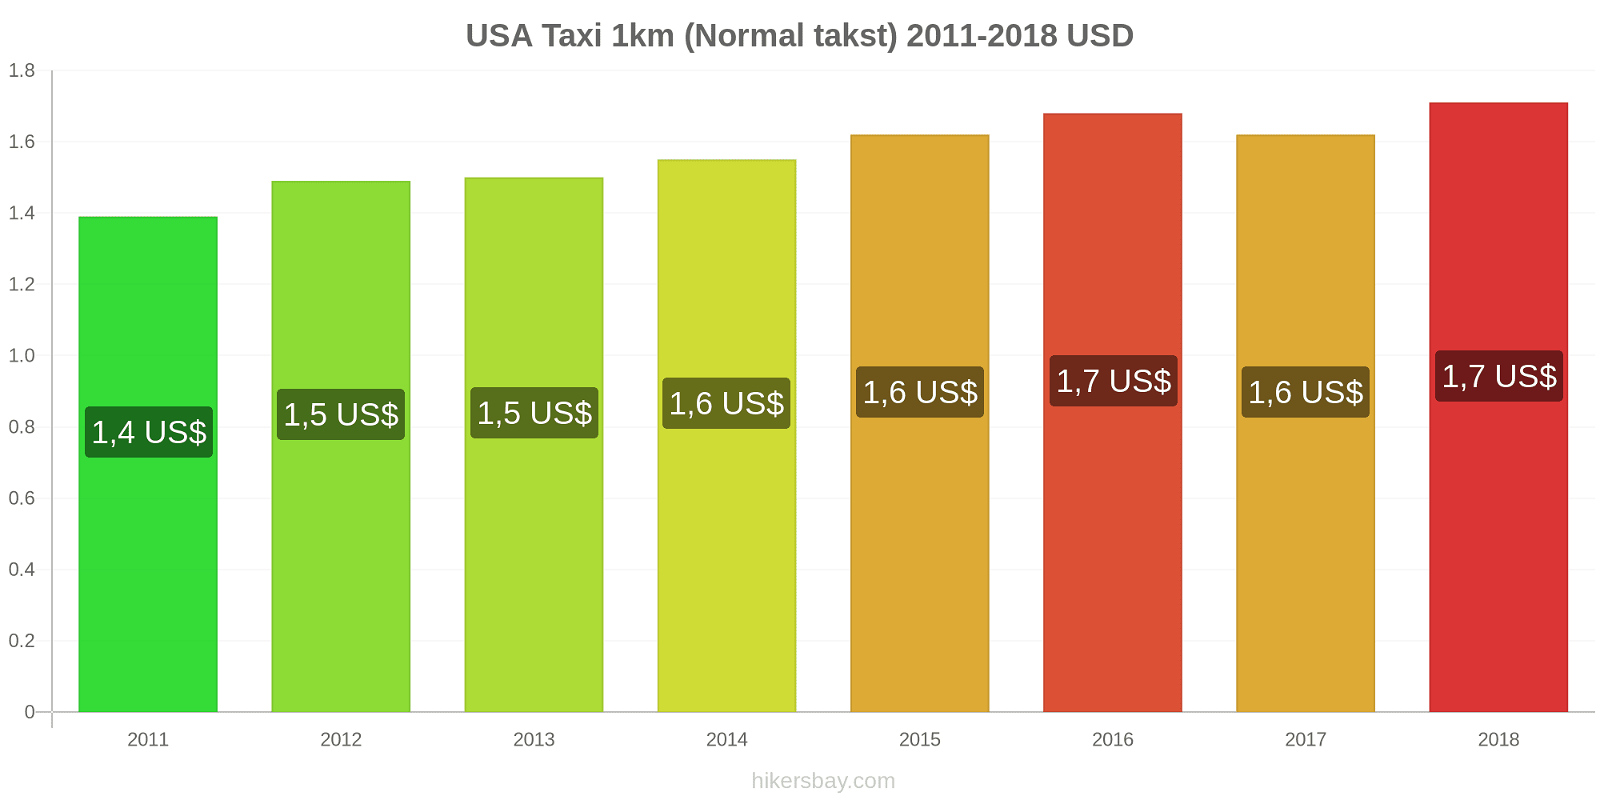 USA prisændringer Taxi 1km (normal takst) hikersbay.com